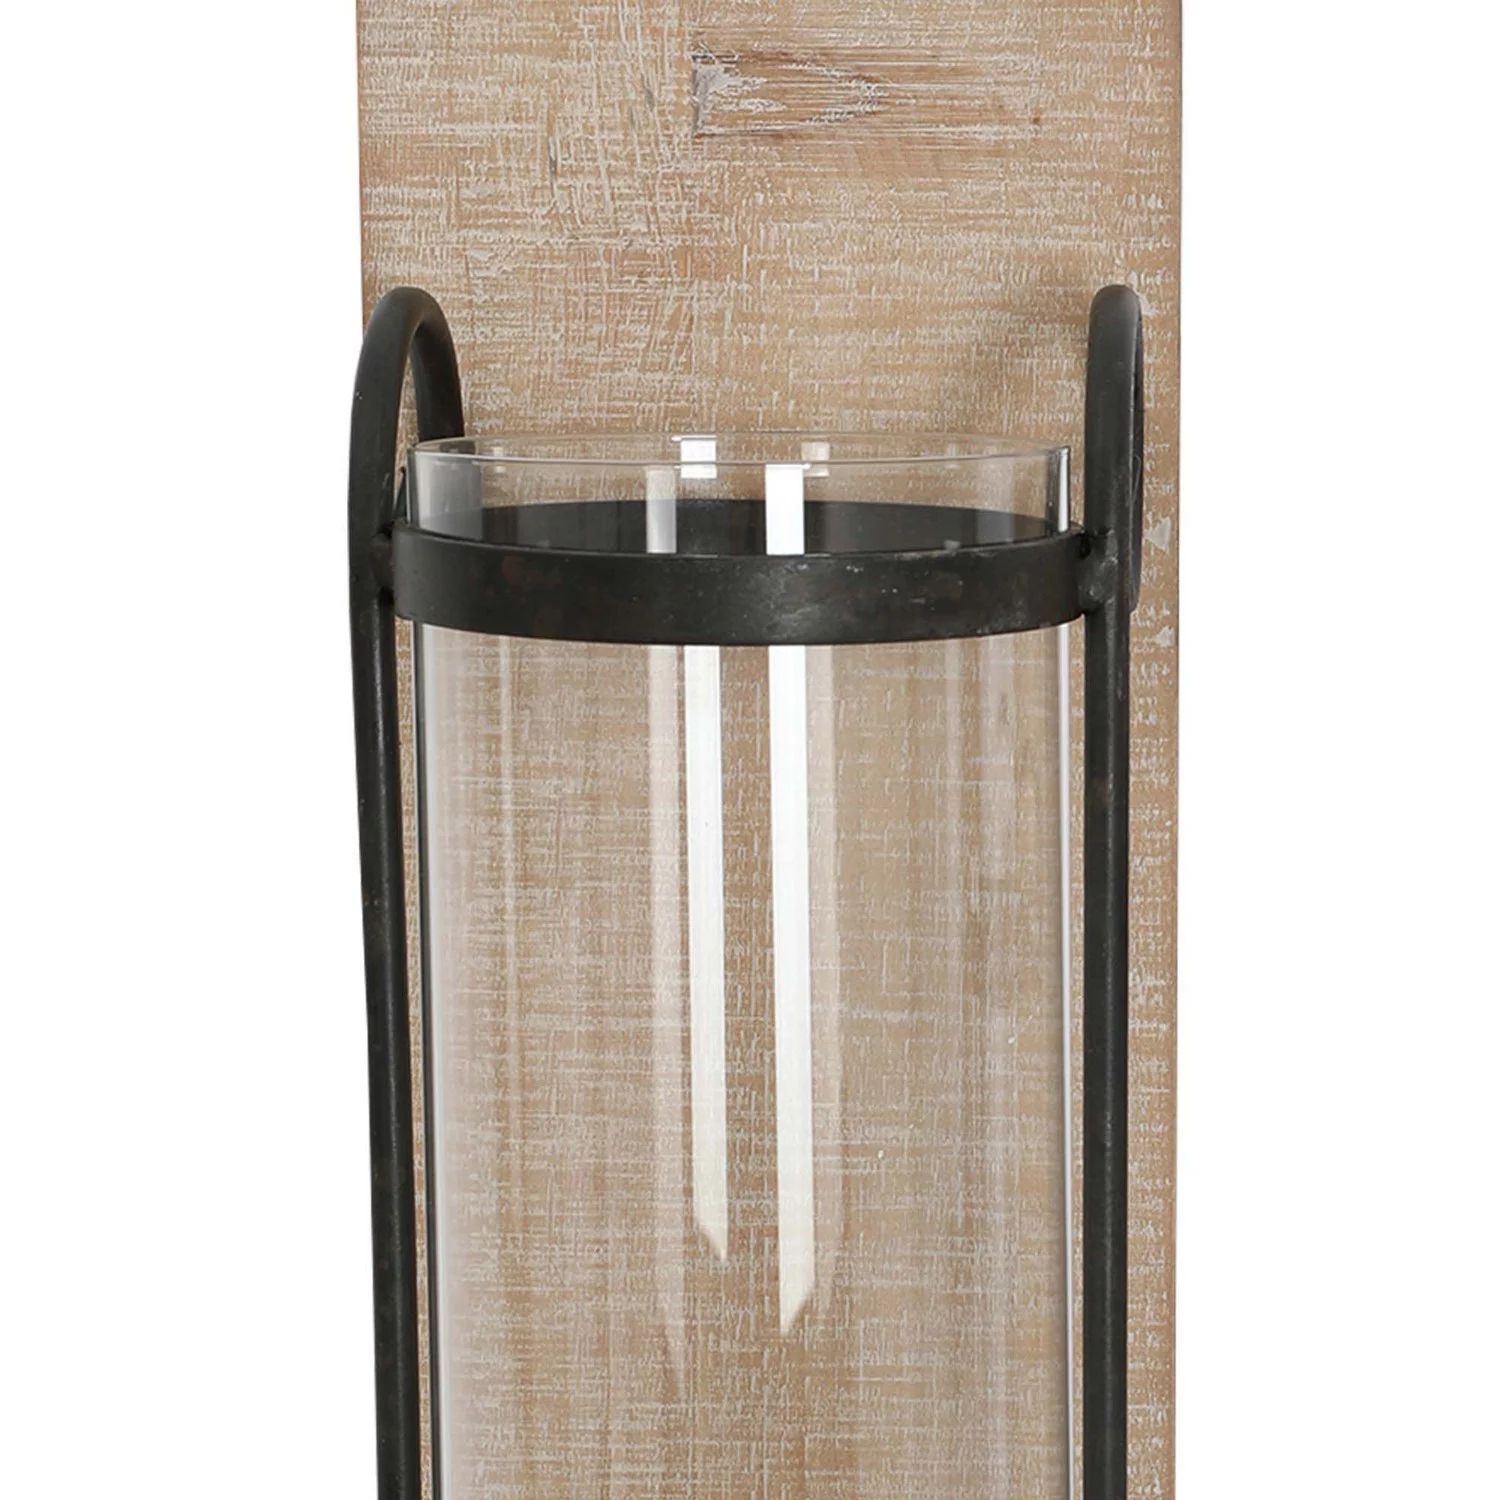 21-дюймовый промышленный настенный деревянный подсвечник со стеклянным ураганом, набор из 2 шт., черный